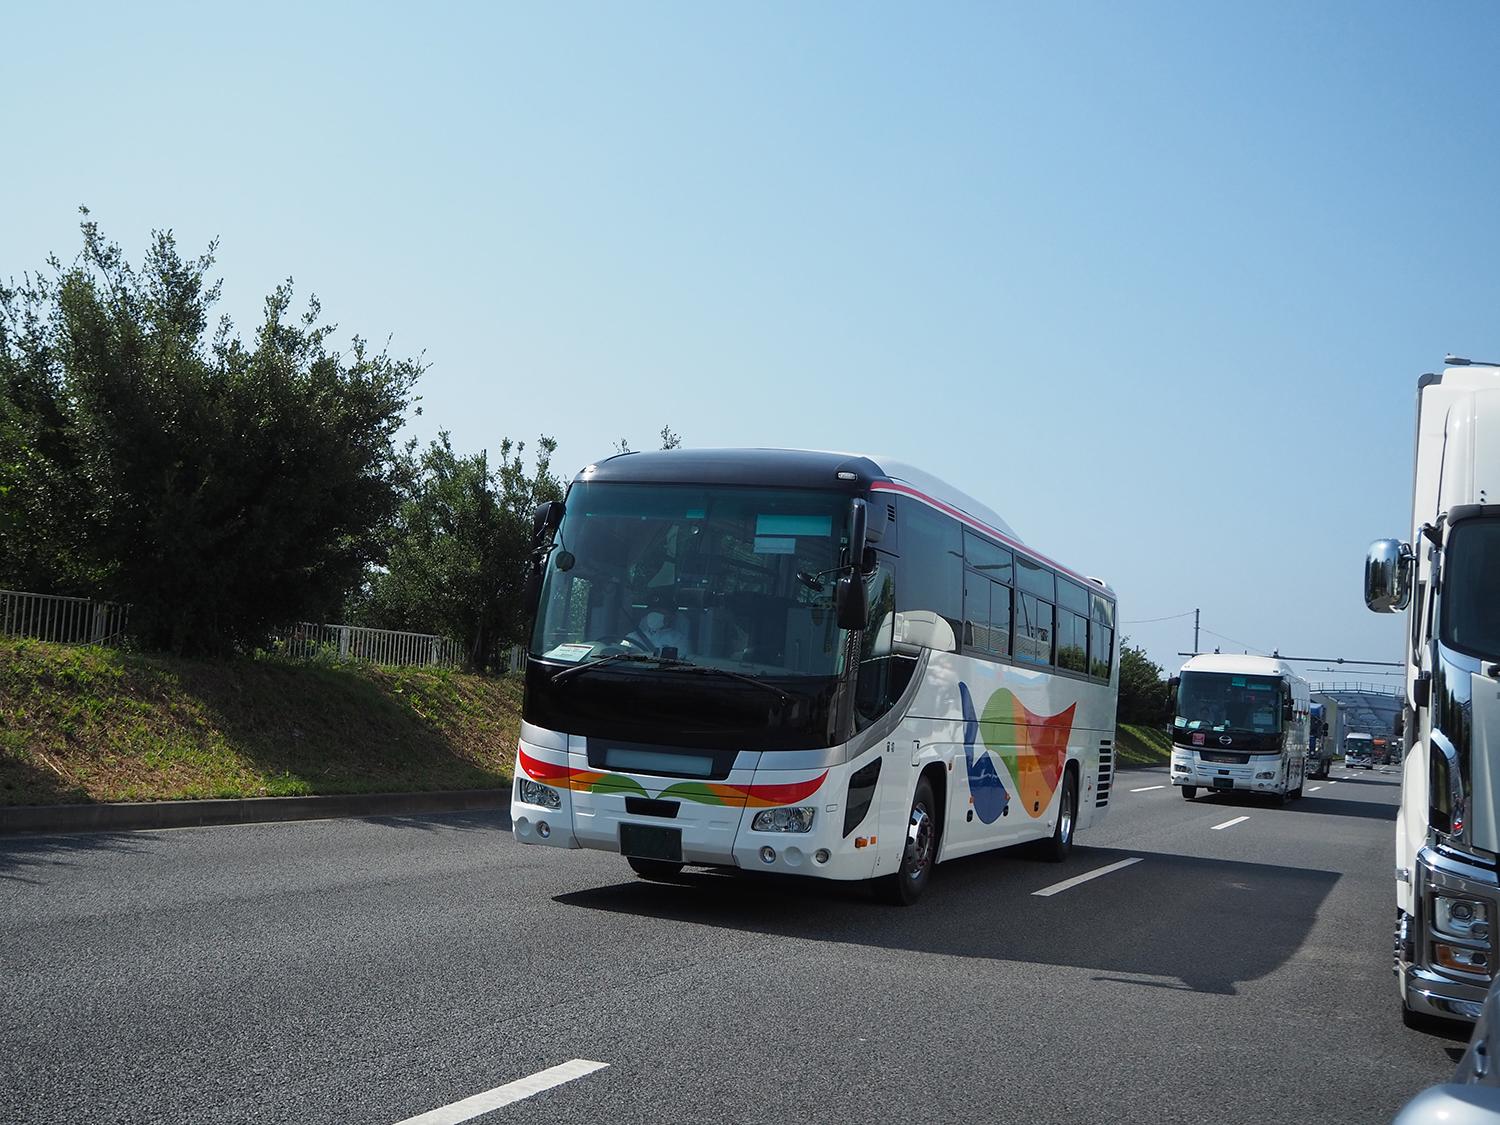 オリンピック関係者輸送用に手配された地方の観光バスの走行シーン